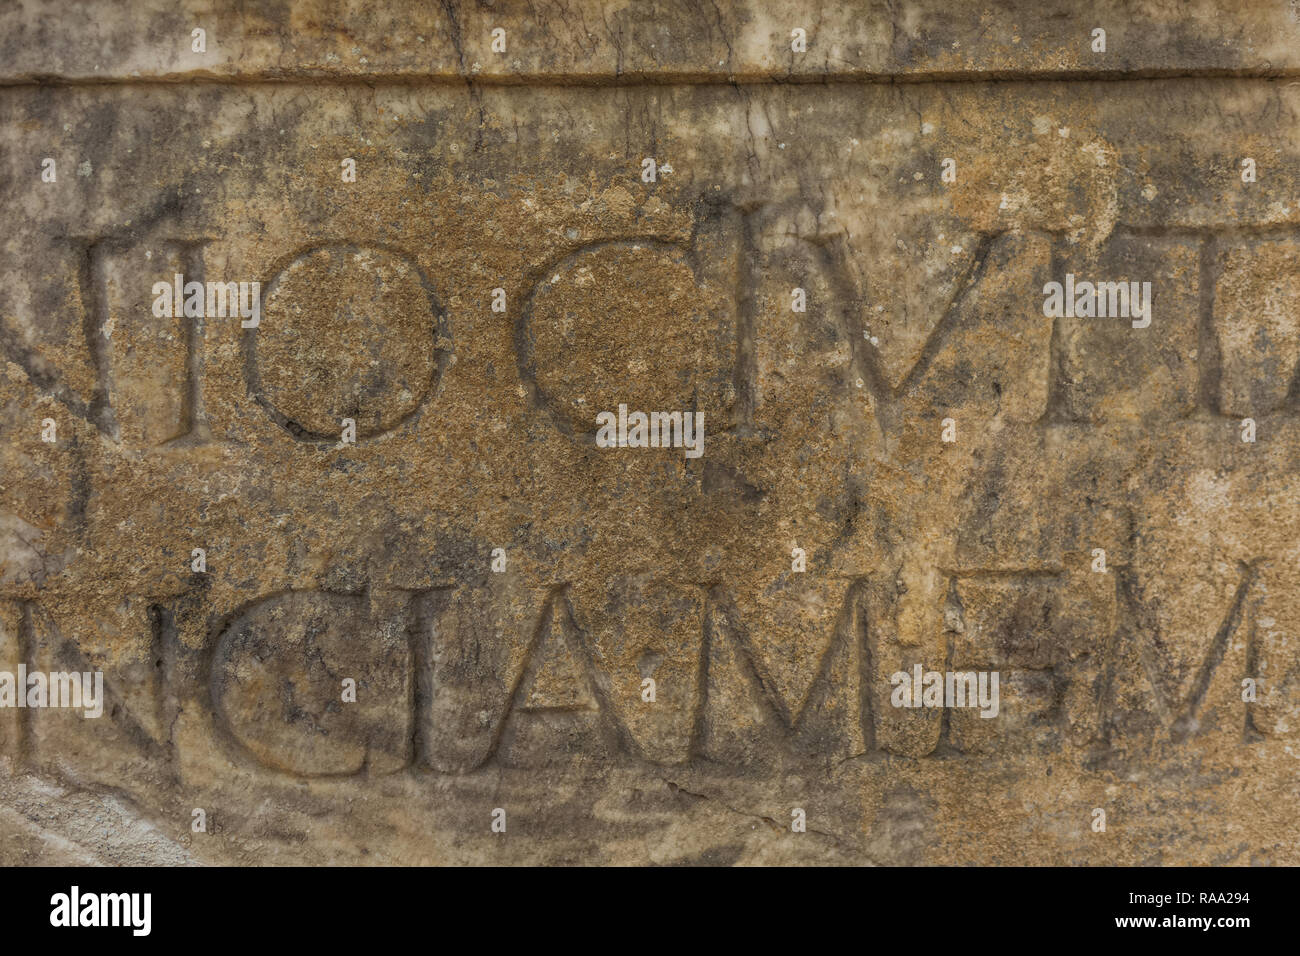 Echte alte Briefe geschnitten in steinigen Mauer der antiken Architektur bei den Ausgrabungen der antiken Ruinen gefunden. Horizontale Farbfotografie. Stockfoto